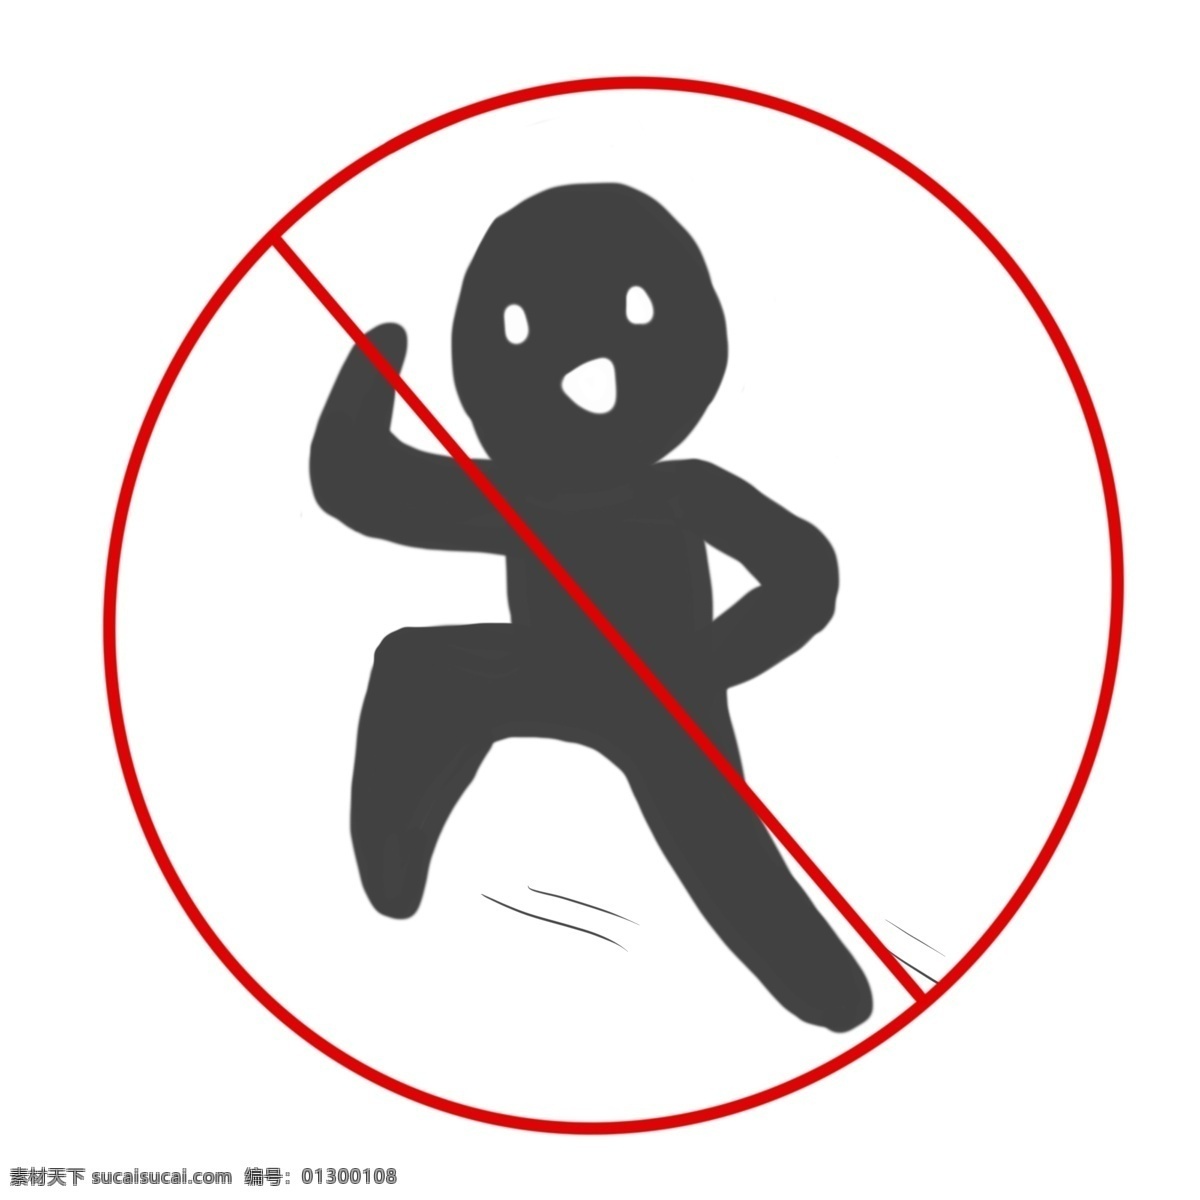 禁止 跑步 警示 图标 跑步图标 慢行 减速慢行 禁止跑步 警示图标 跑步插图